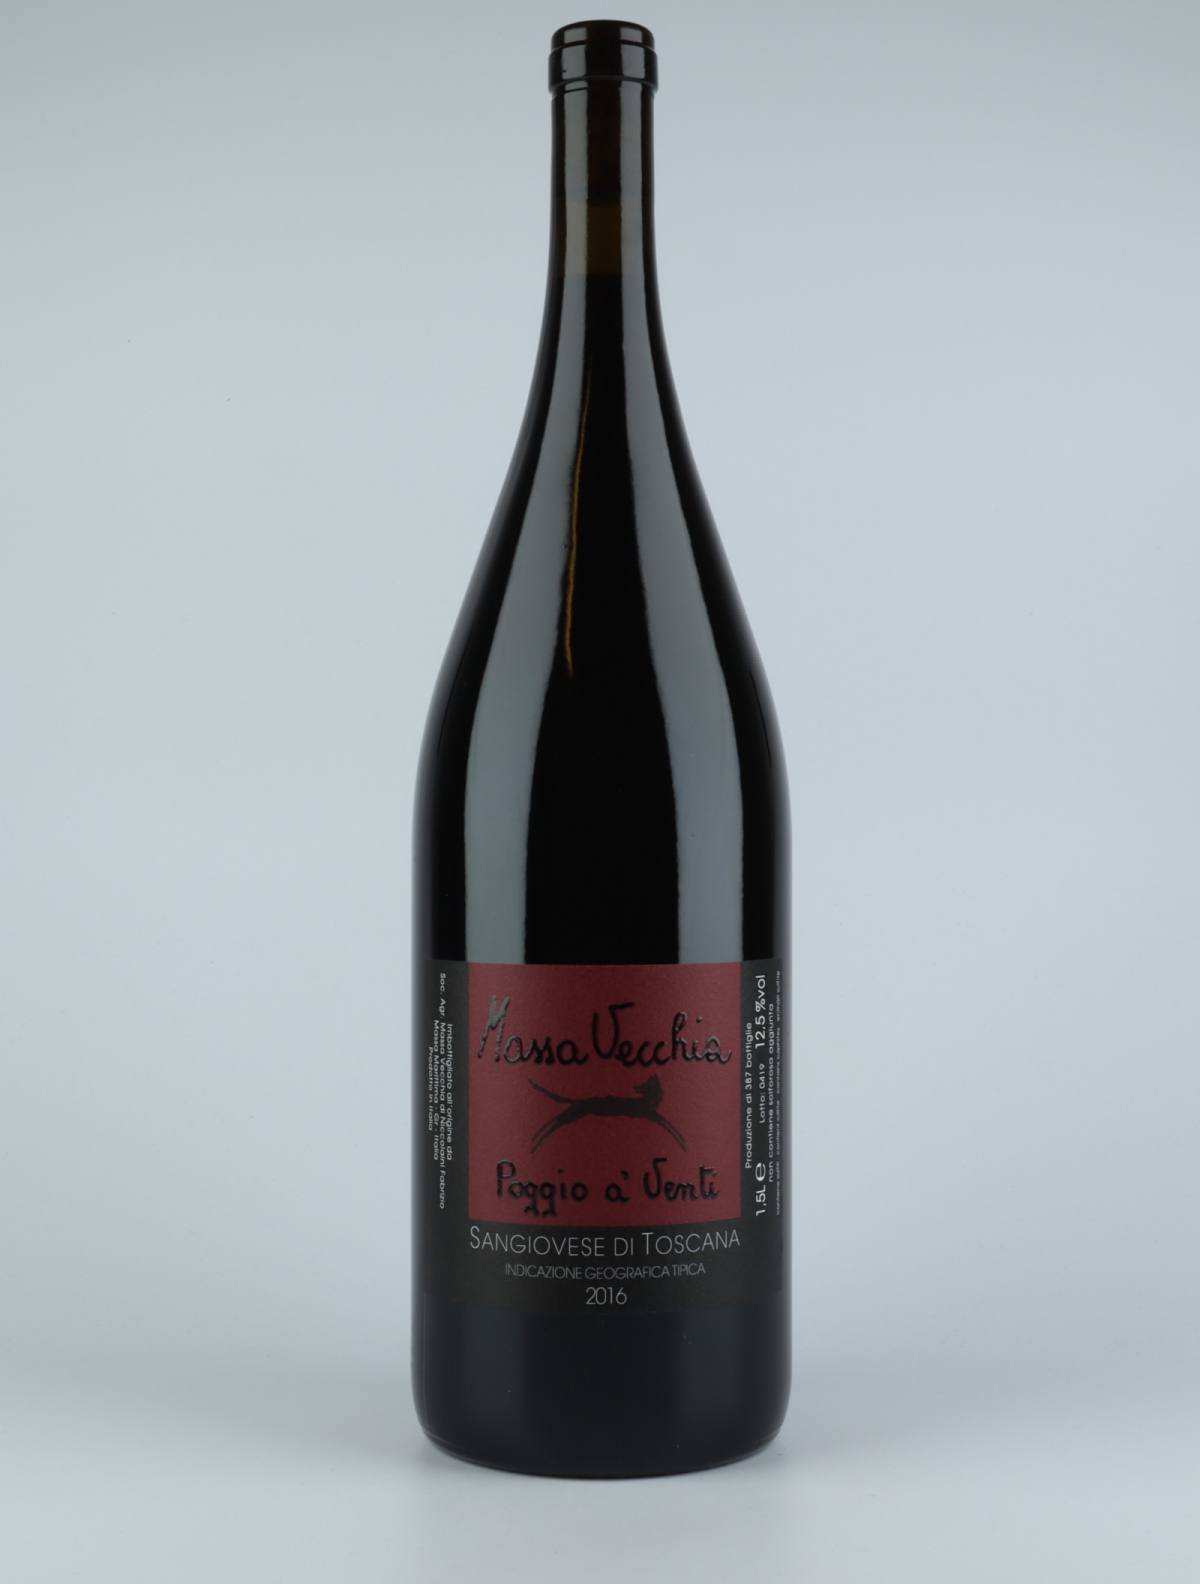 A bottle 2016 Poggio a' Venti Red wine from Massa Vecchia, Tuscany in Italy